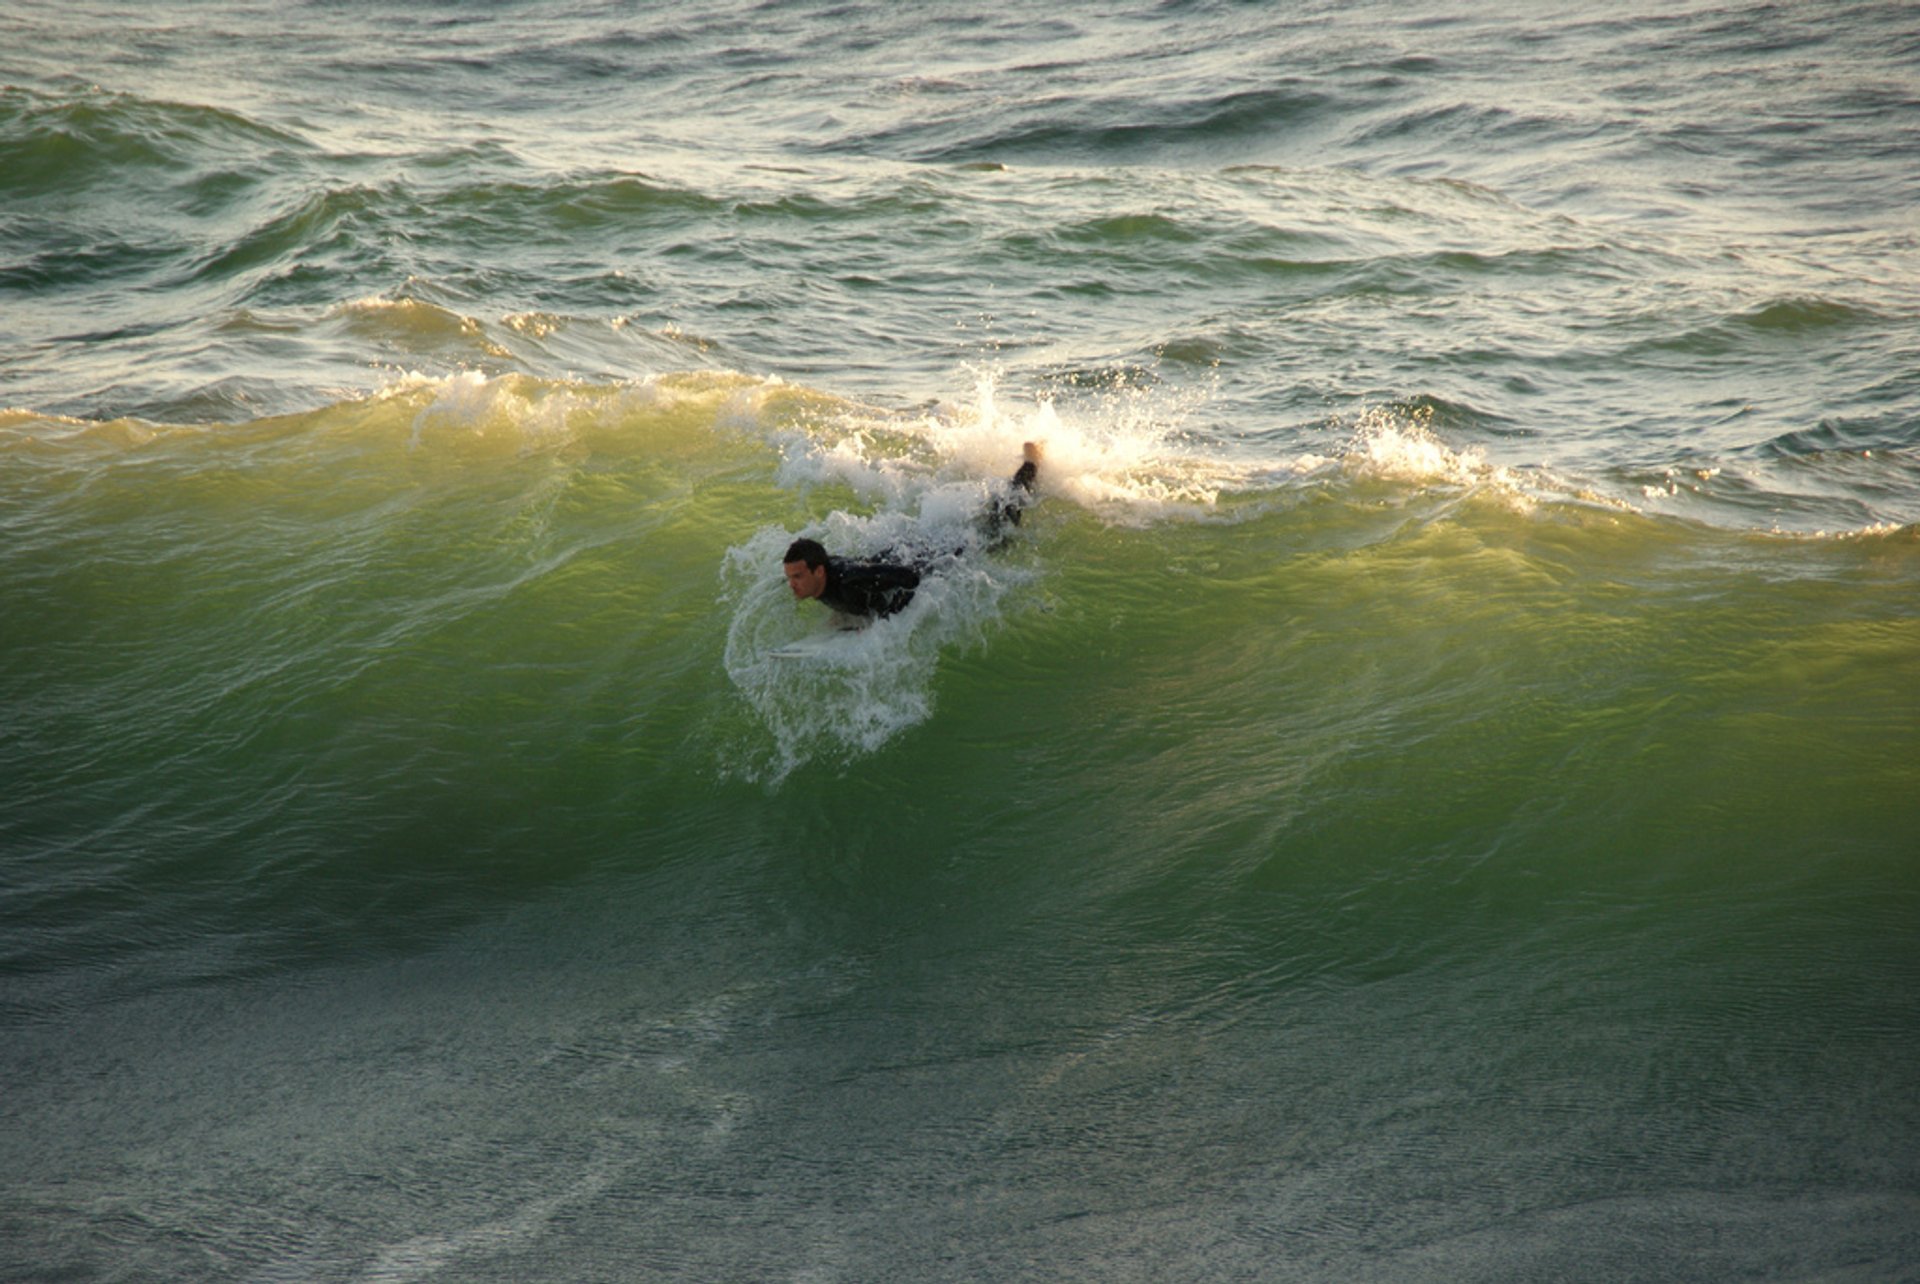 Surfing 